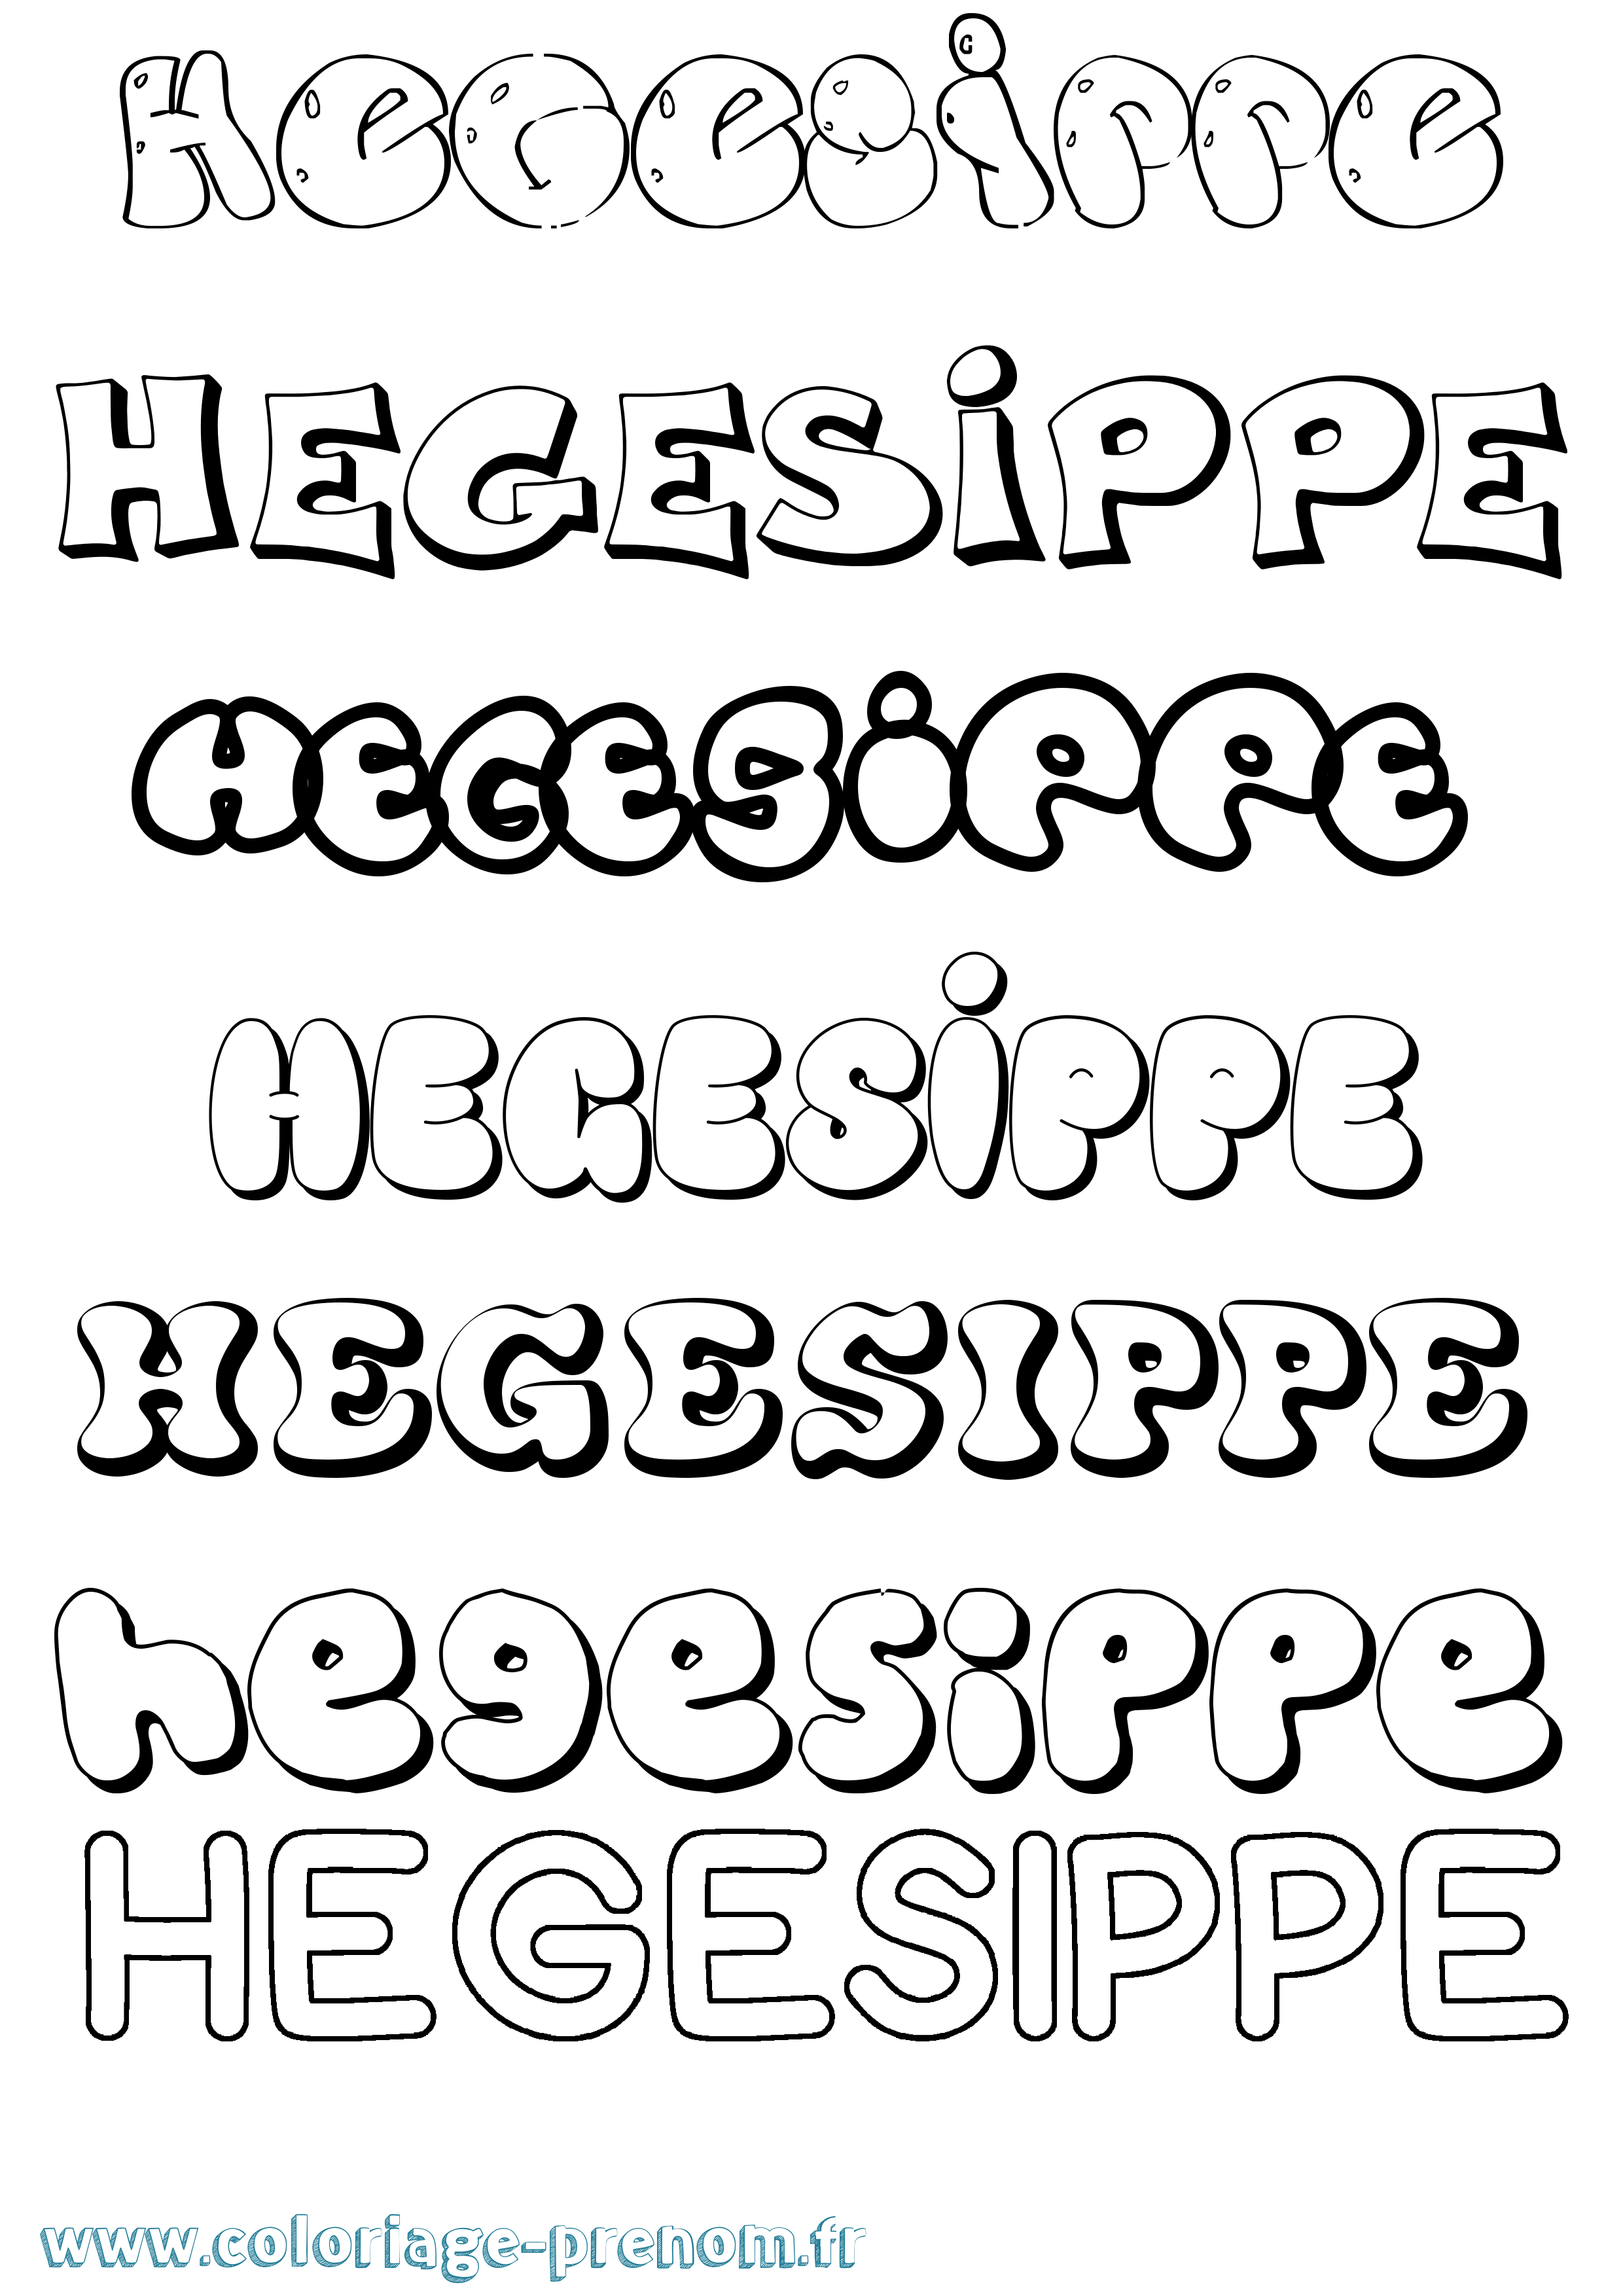 Coloriage prénom Hegesippe Bubble